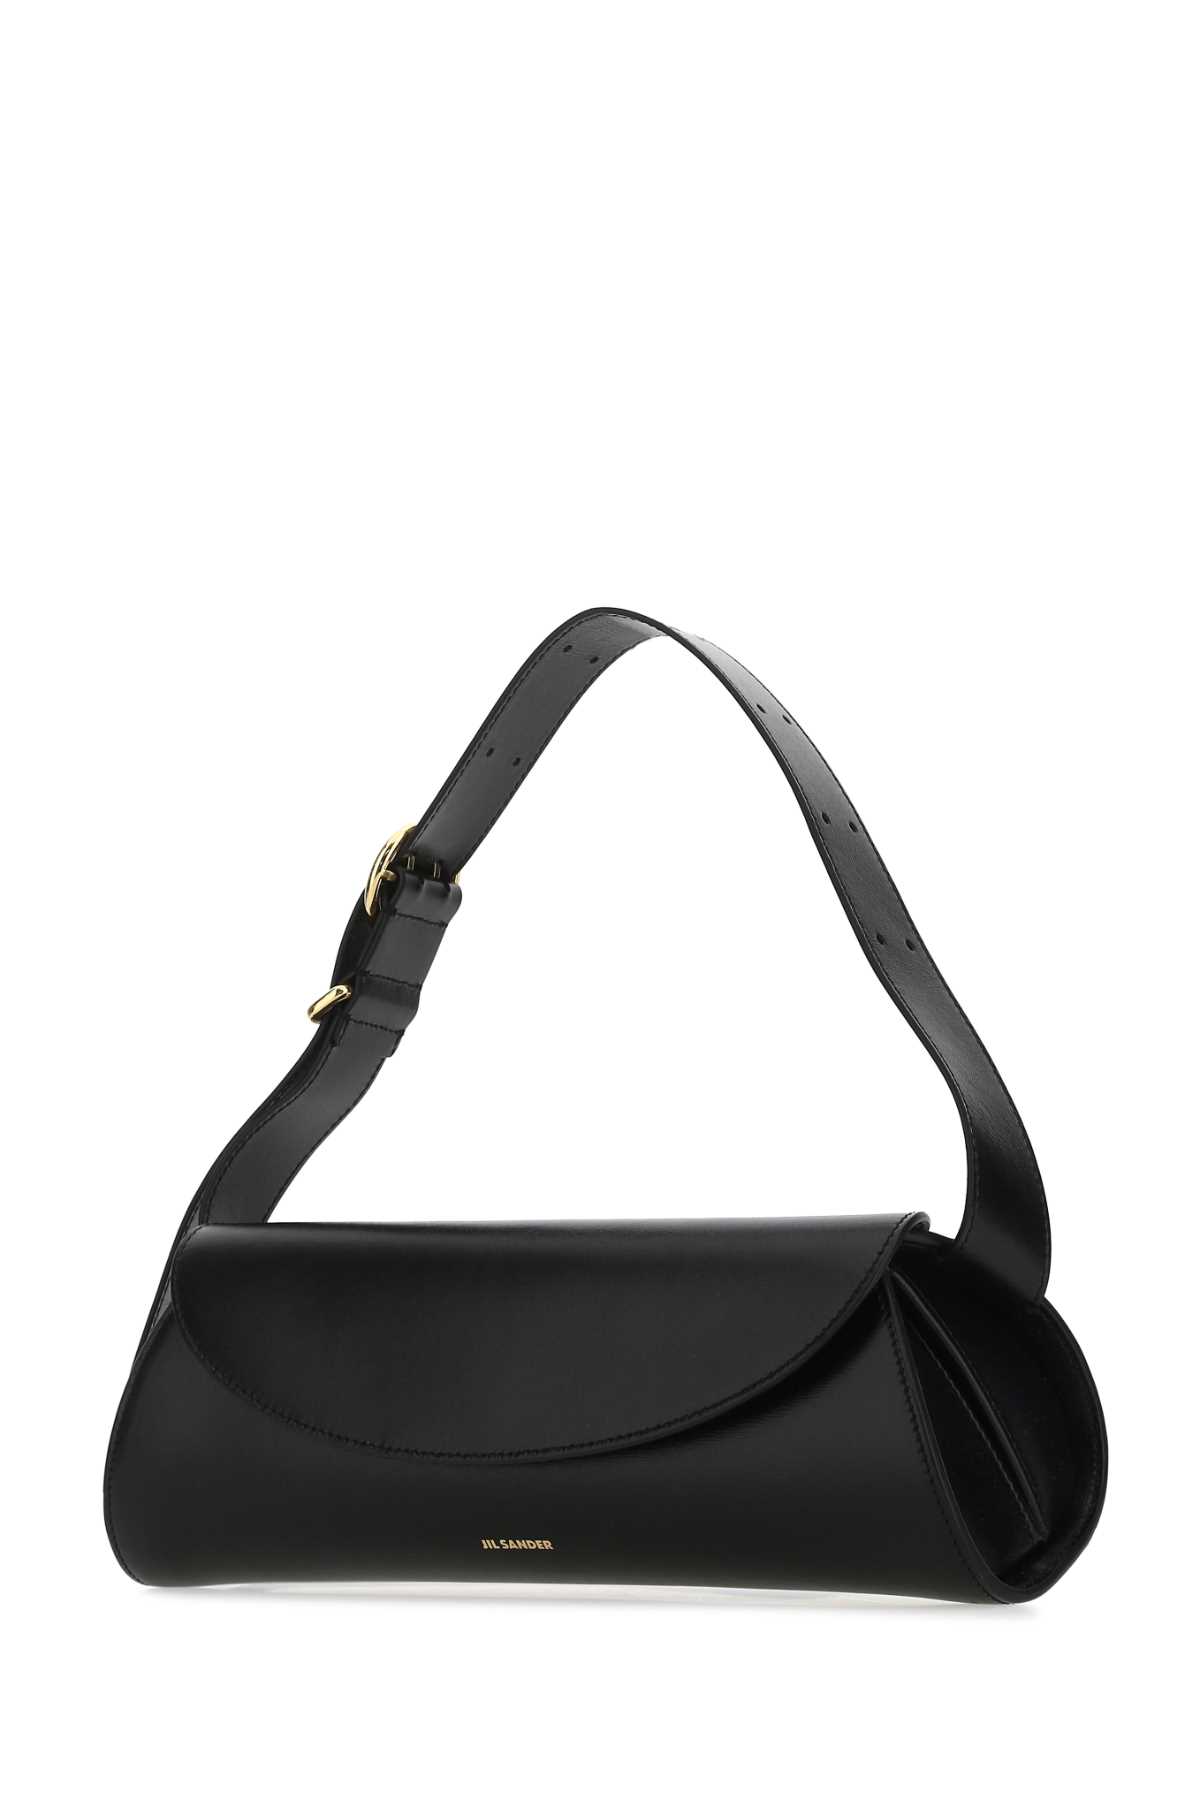 Jil Sander Black Leather Cannolo Grande Shoulder Bag In 001